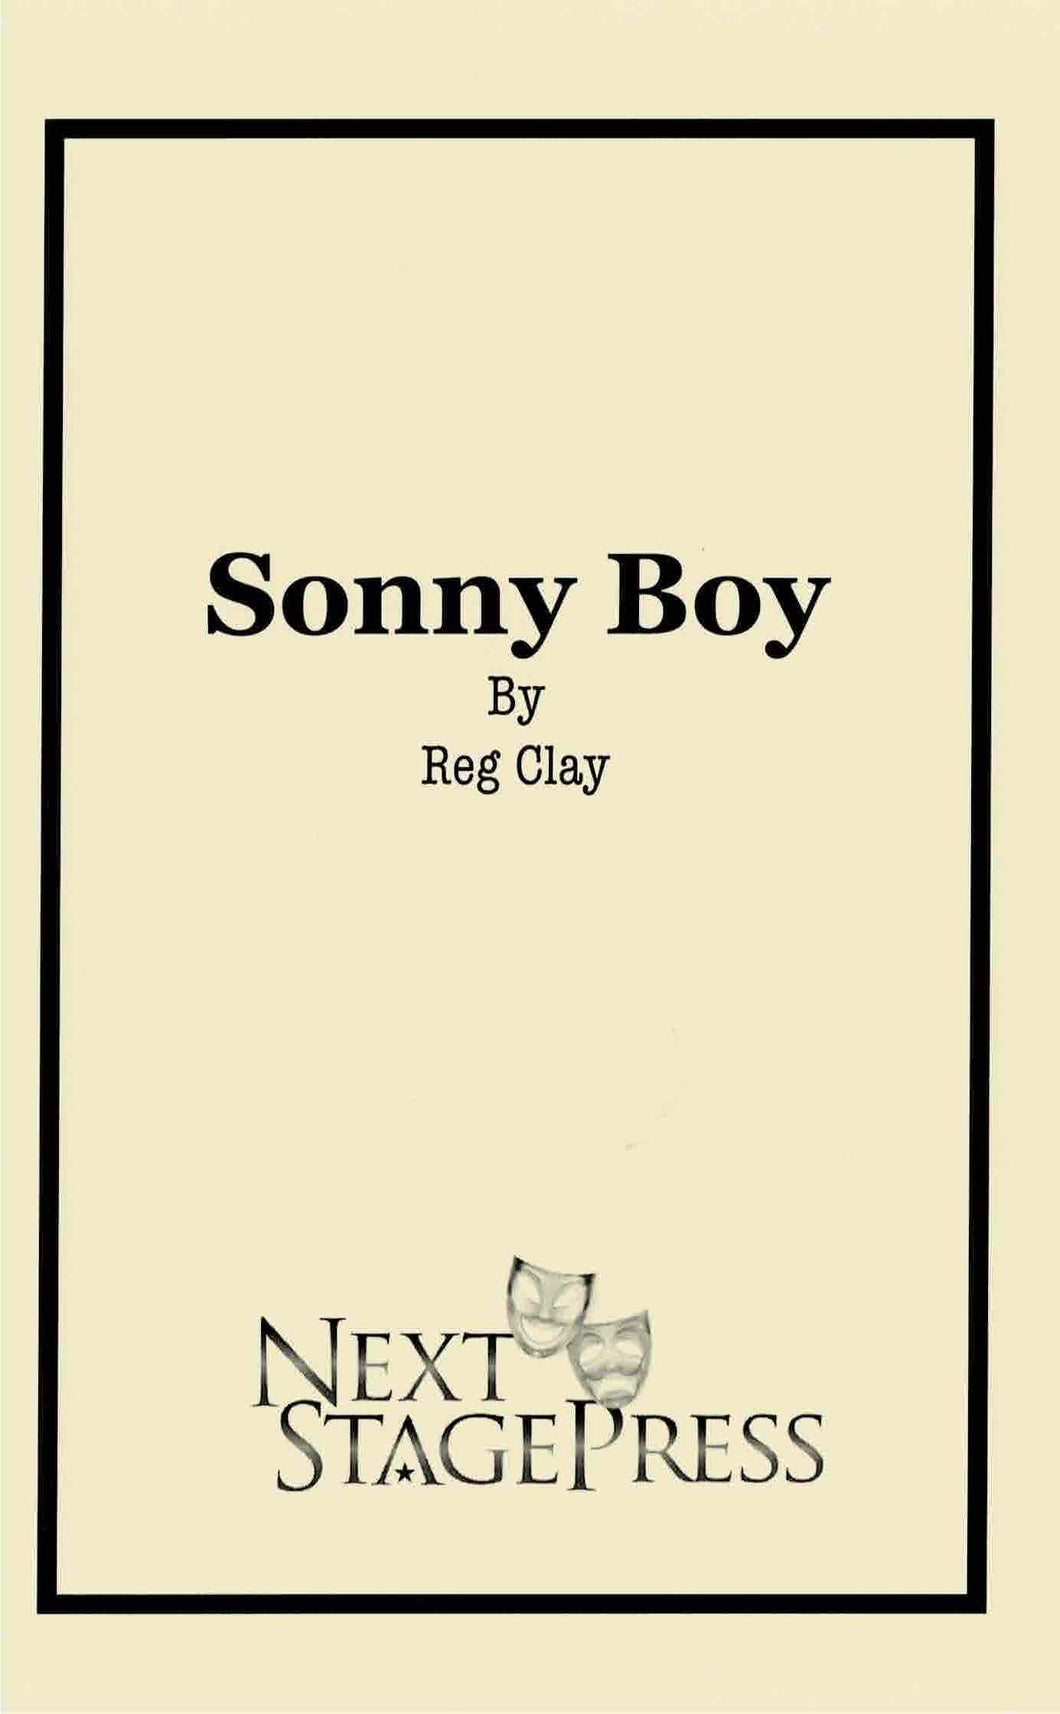 Sonny Boy by Reg Clay - Digital Version